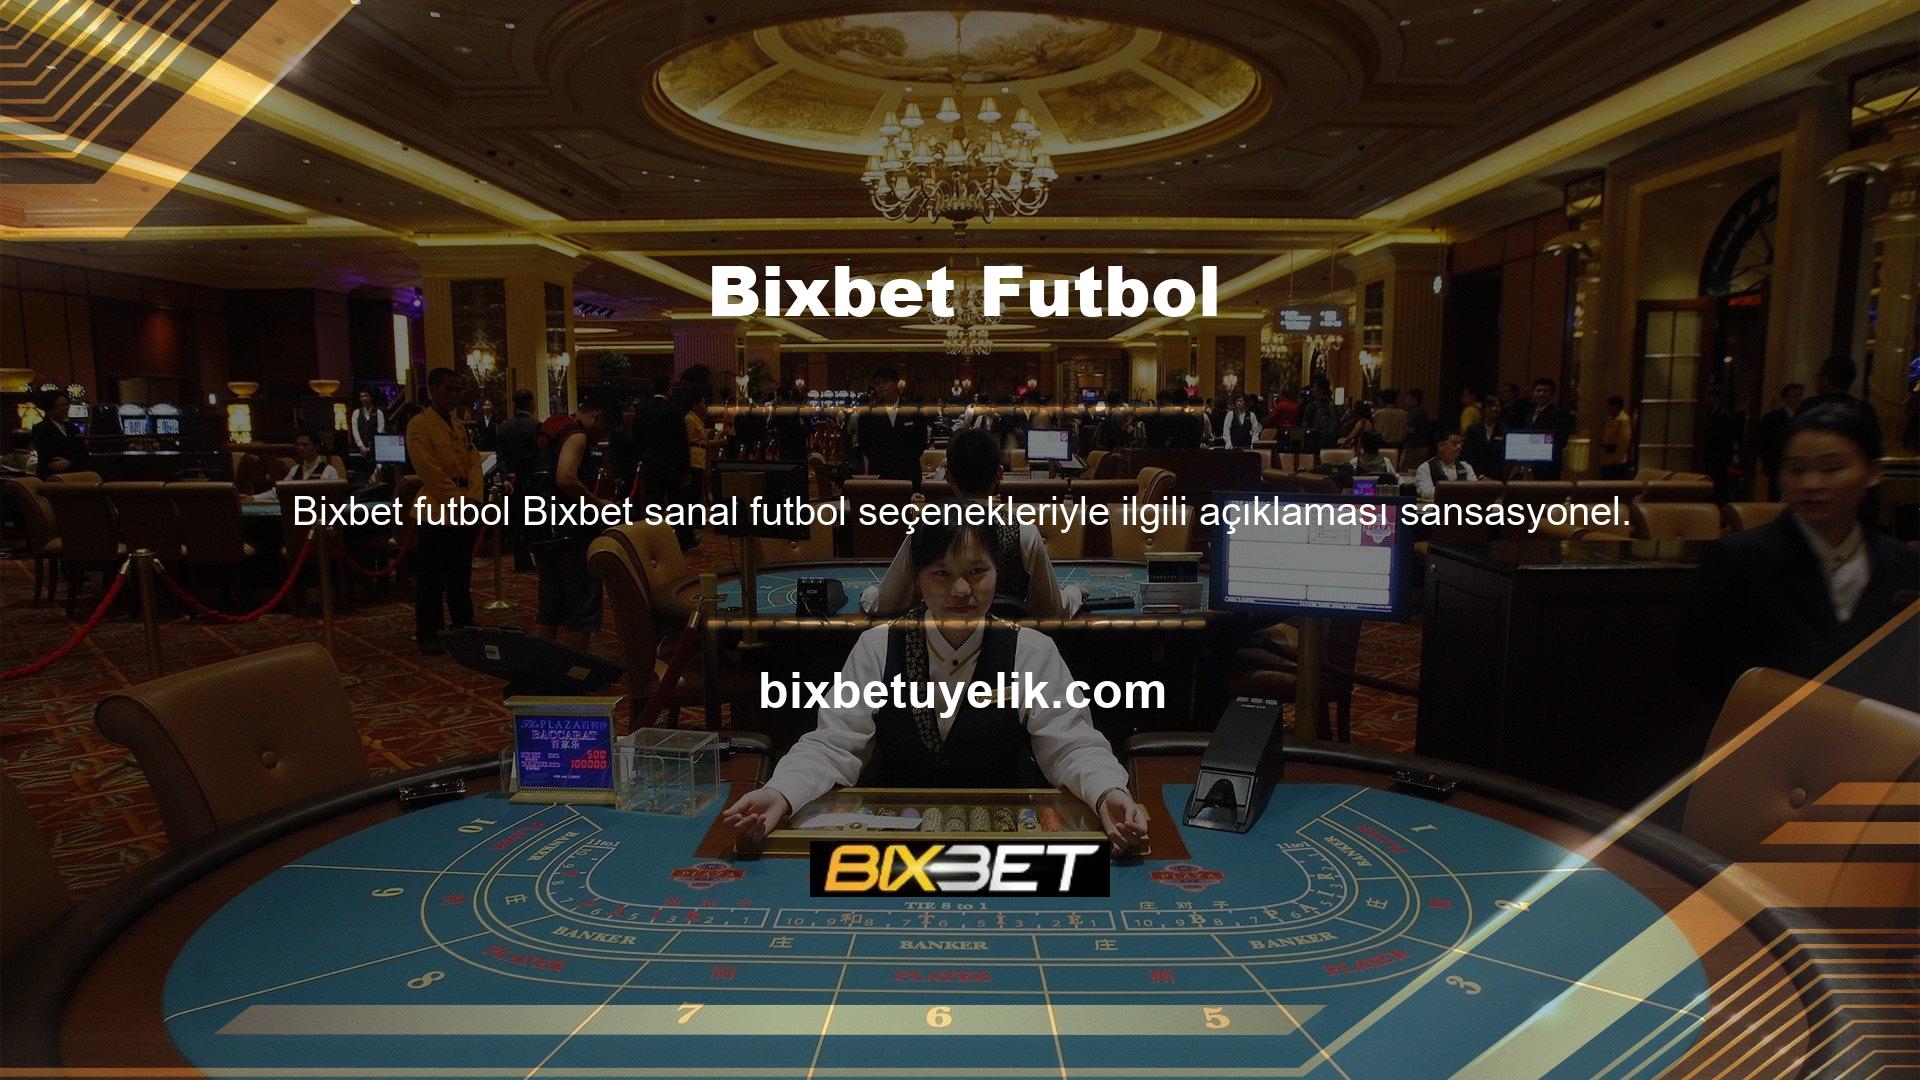 Bu yazımda Bixbet sanal futbol bahislerinden bahsetmek istiyorum